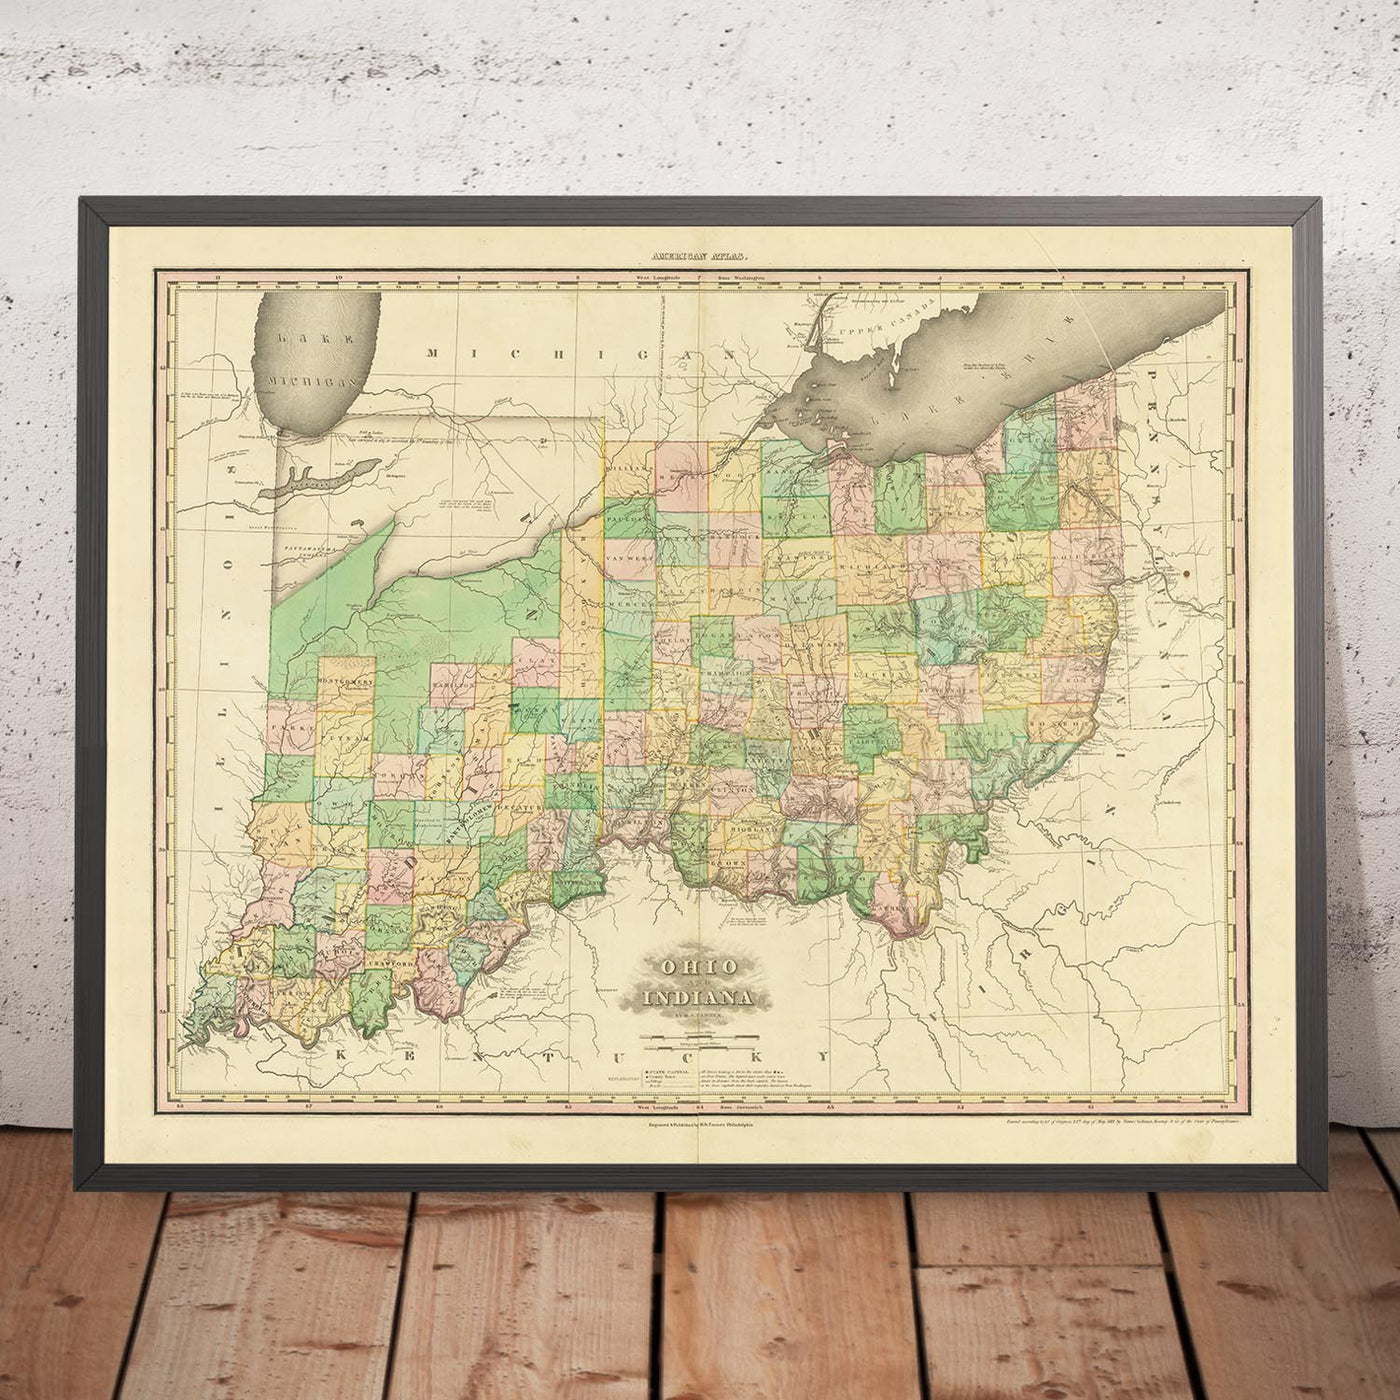 Ancienne carte de l'Ohio et de l'Indiana par H.S. Tanner, 1820 : Cincinnati, Columbus, Indianapolis, Cleveland et Dayton